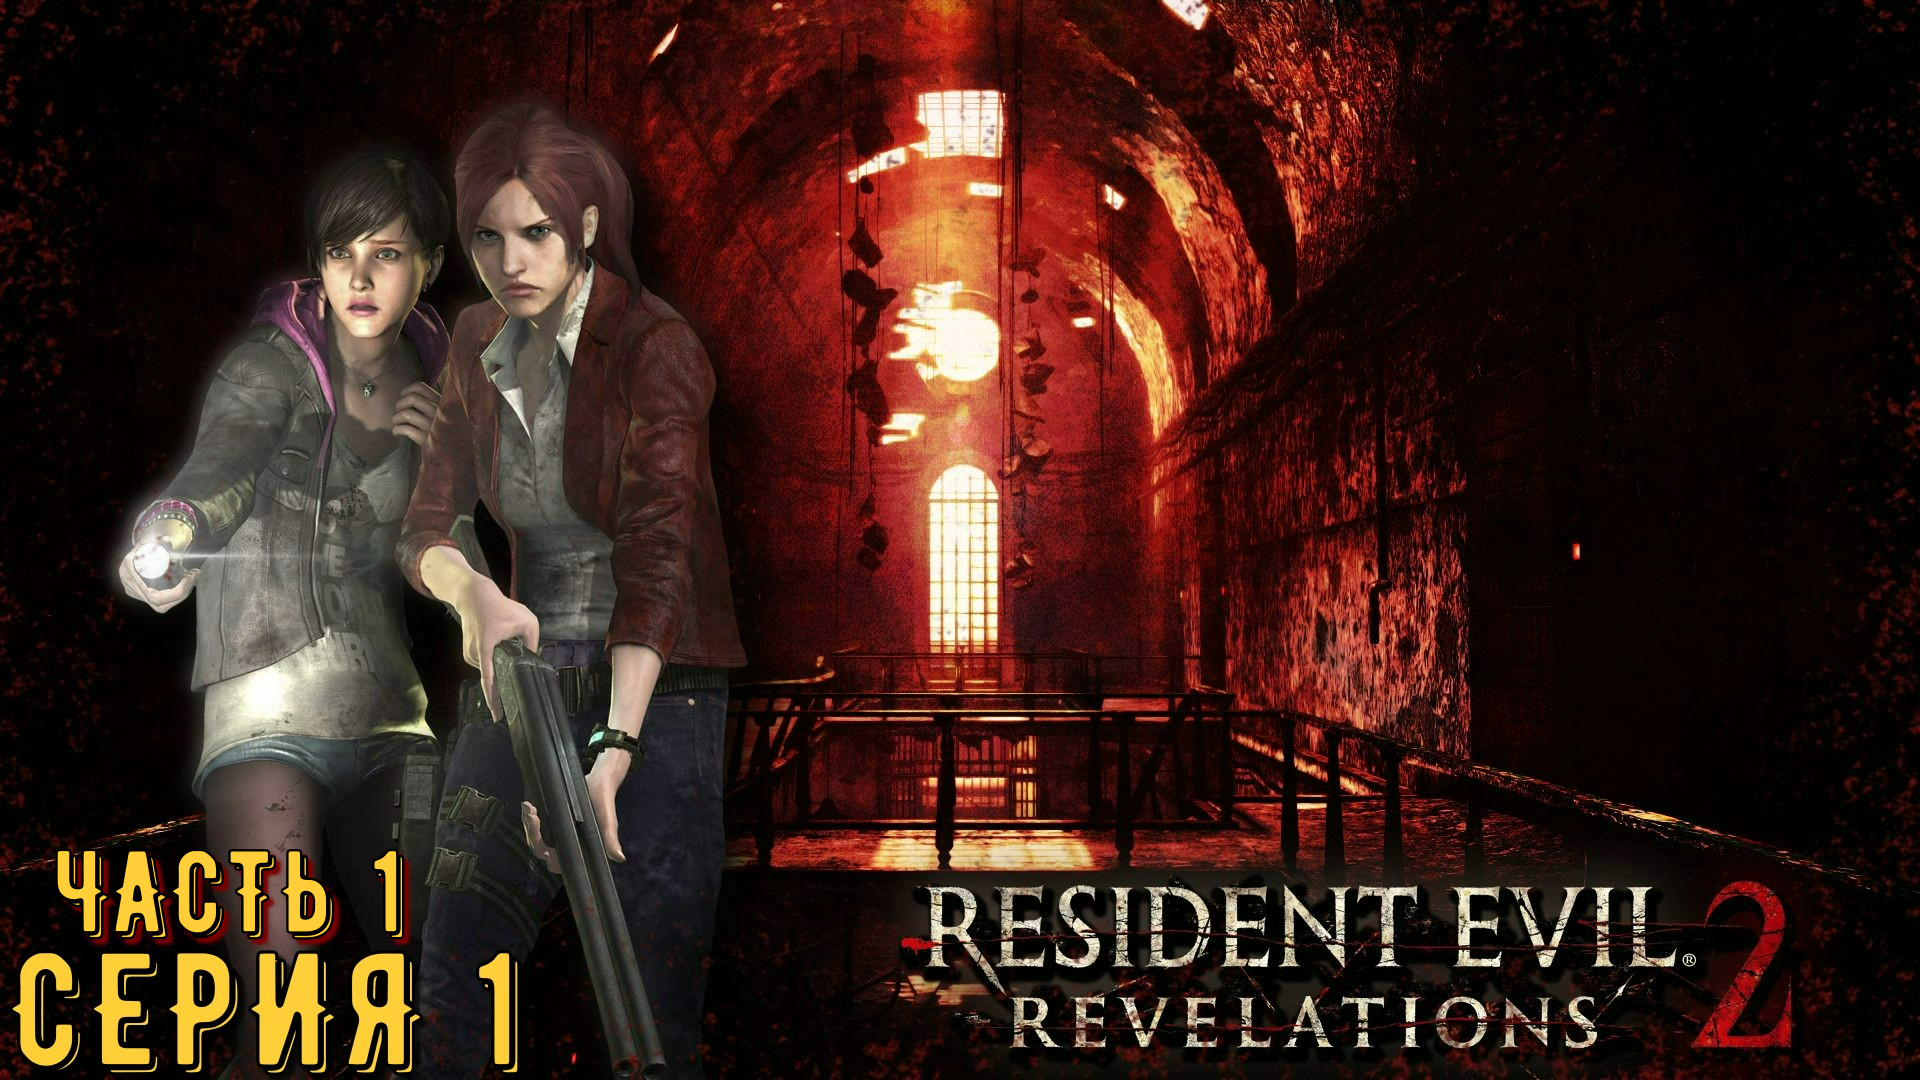 Resident Evil Revelations 2 / Biohazard Revelations 2 ► Серия 1 Часть 1 ◄ | Запись стрима